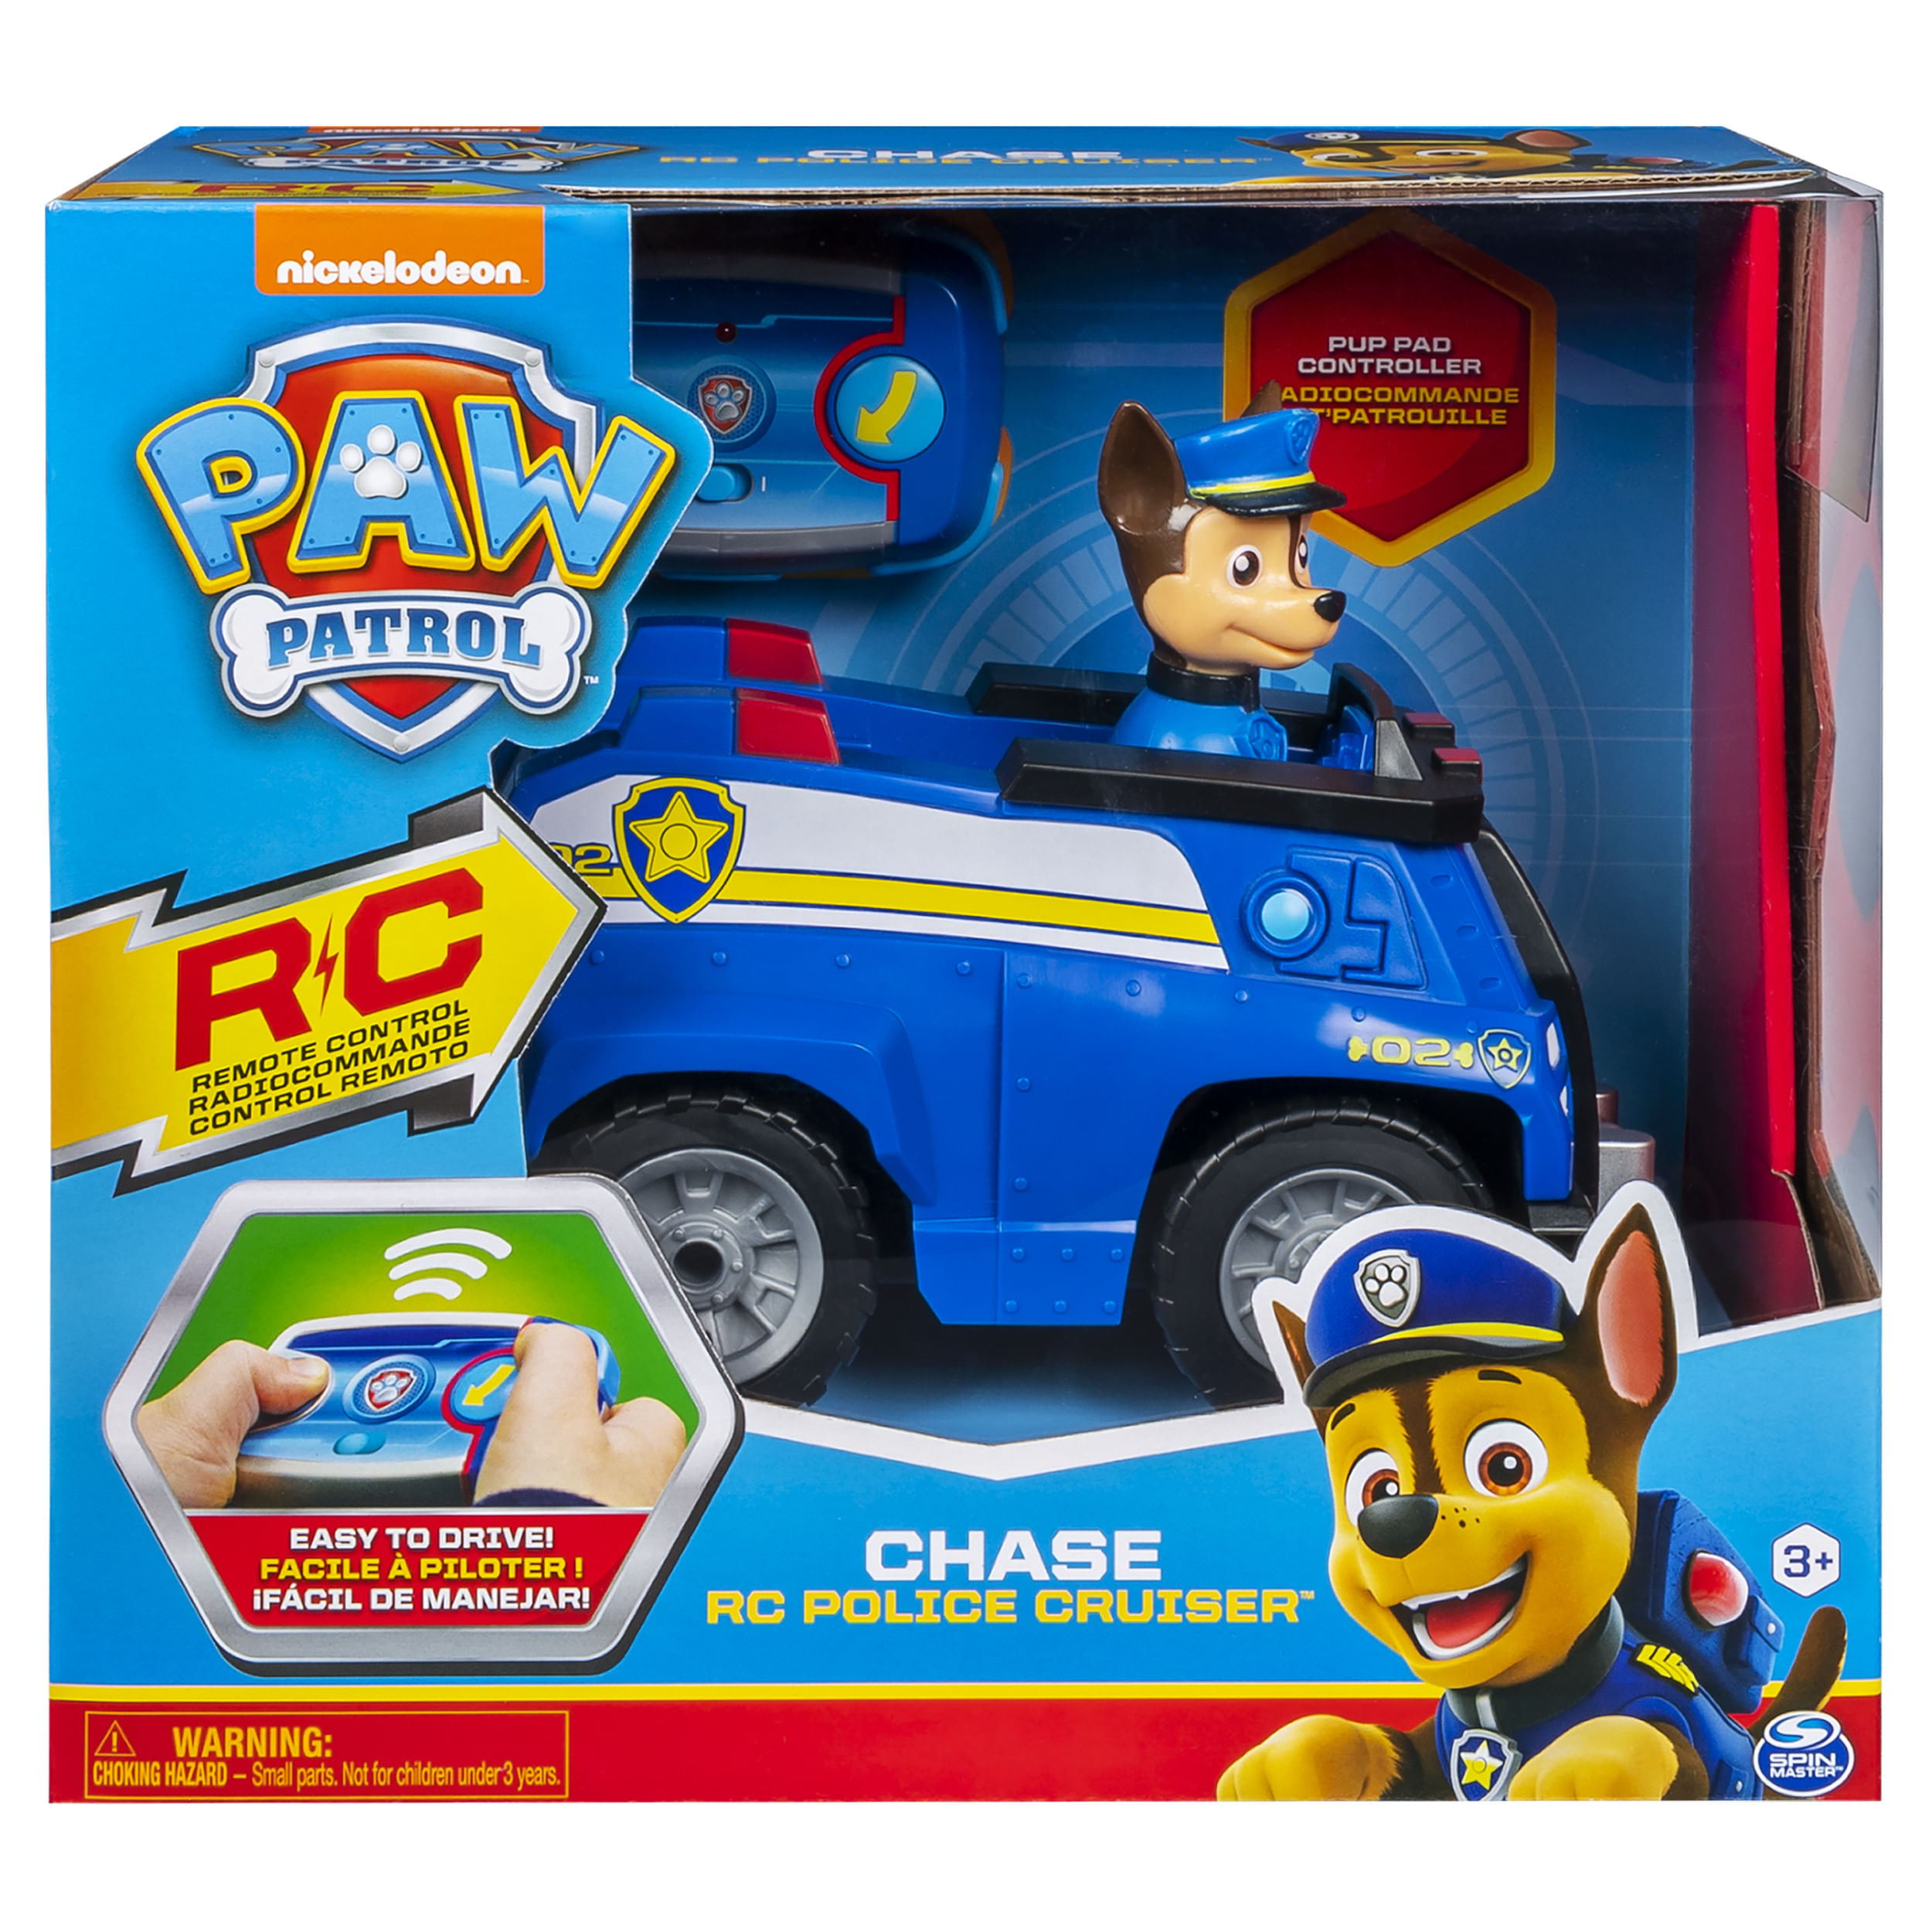 PAW Patrol Quartier Generale, Set di gioco Torre di Controllo, 2 Personaggi  di Chase, auto della polizia di Chase e accessori, Giochi per bambini dai